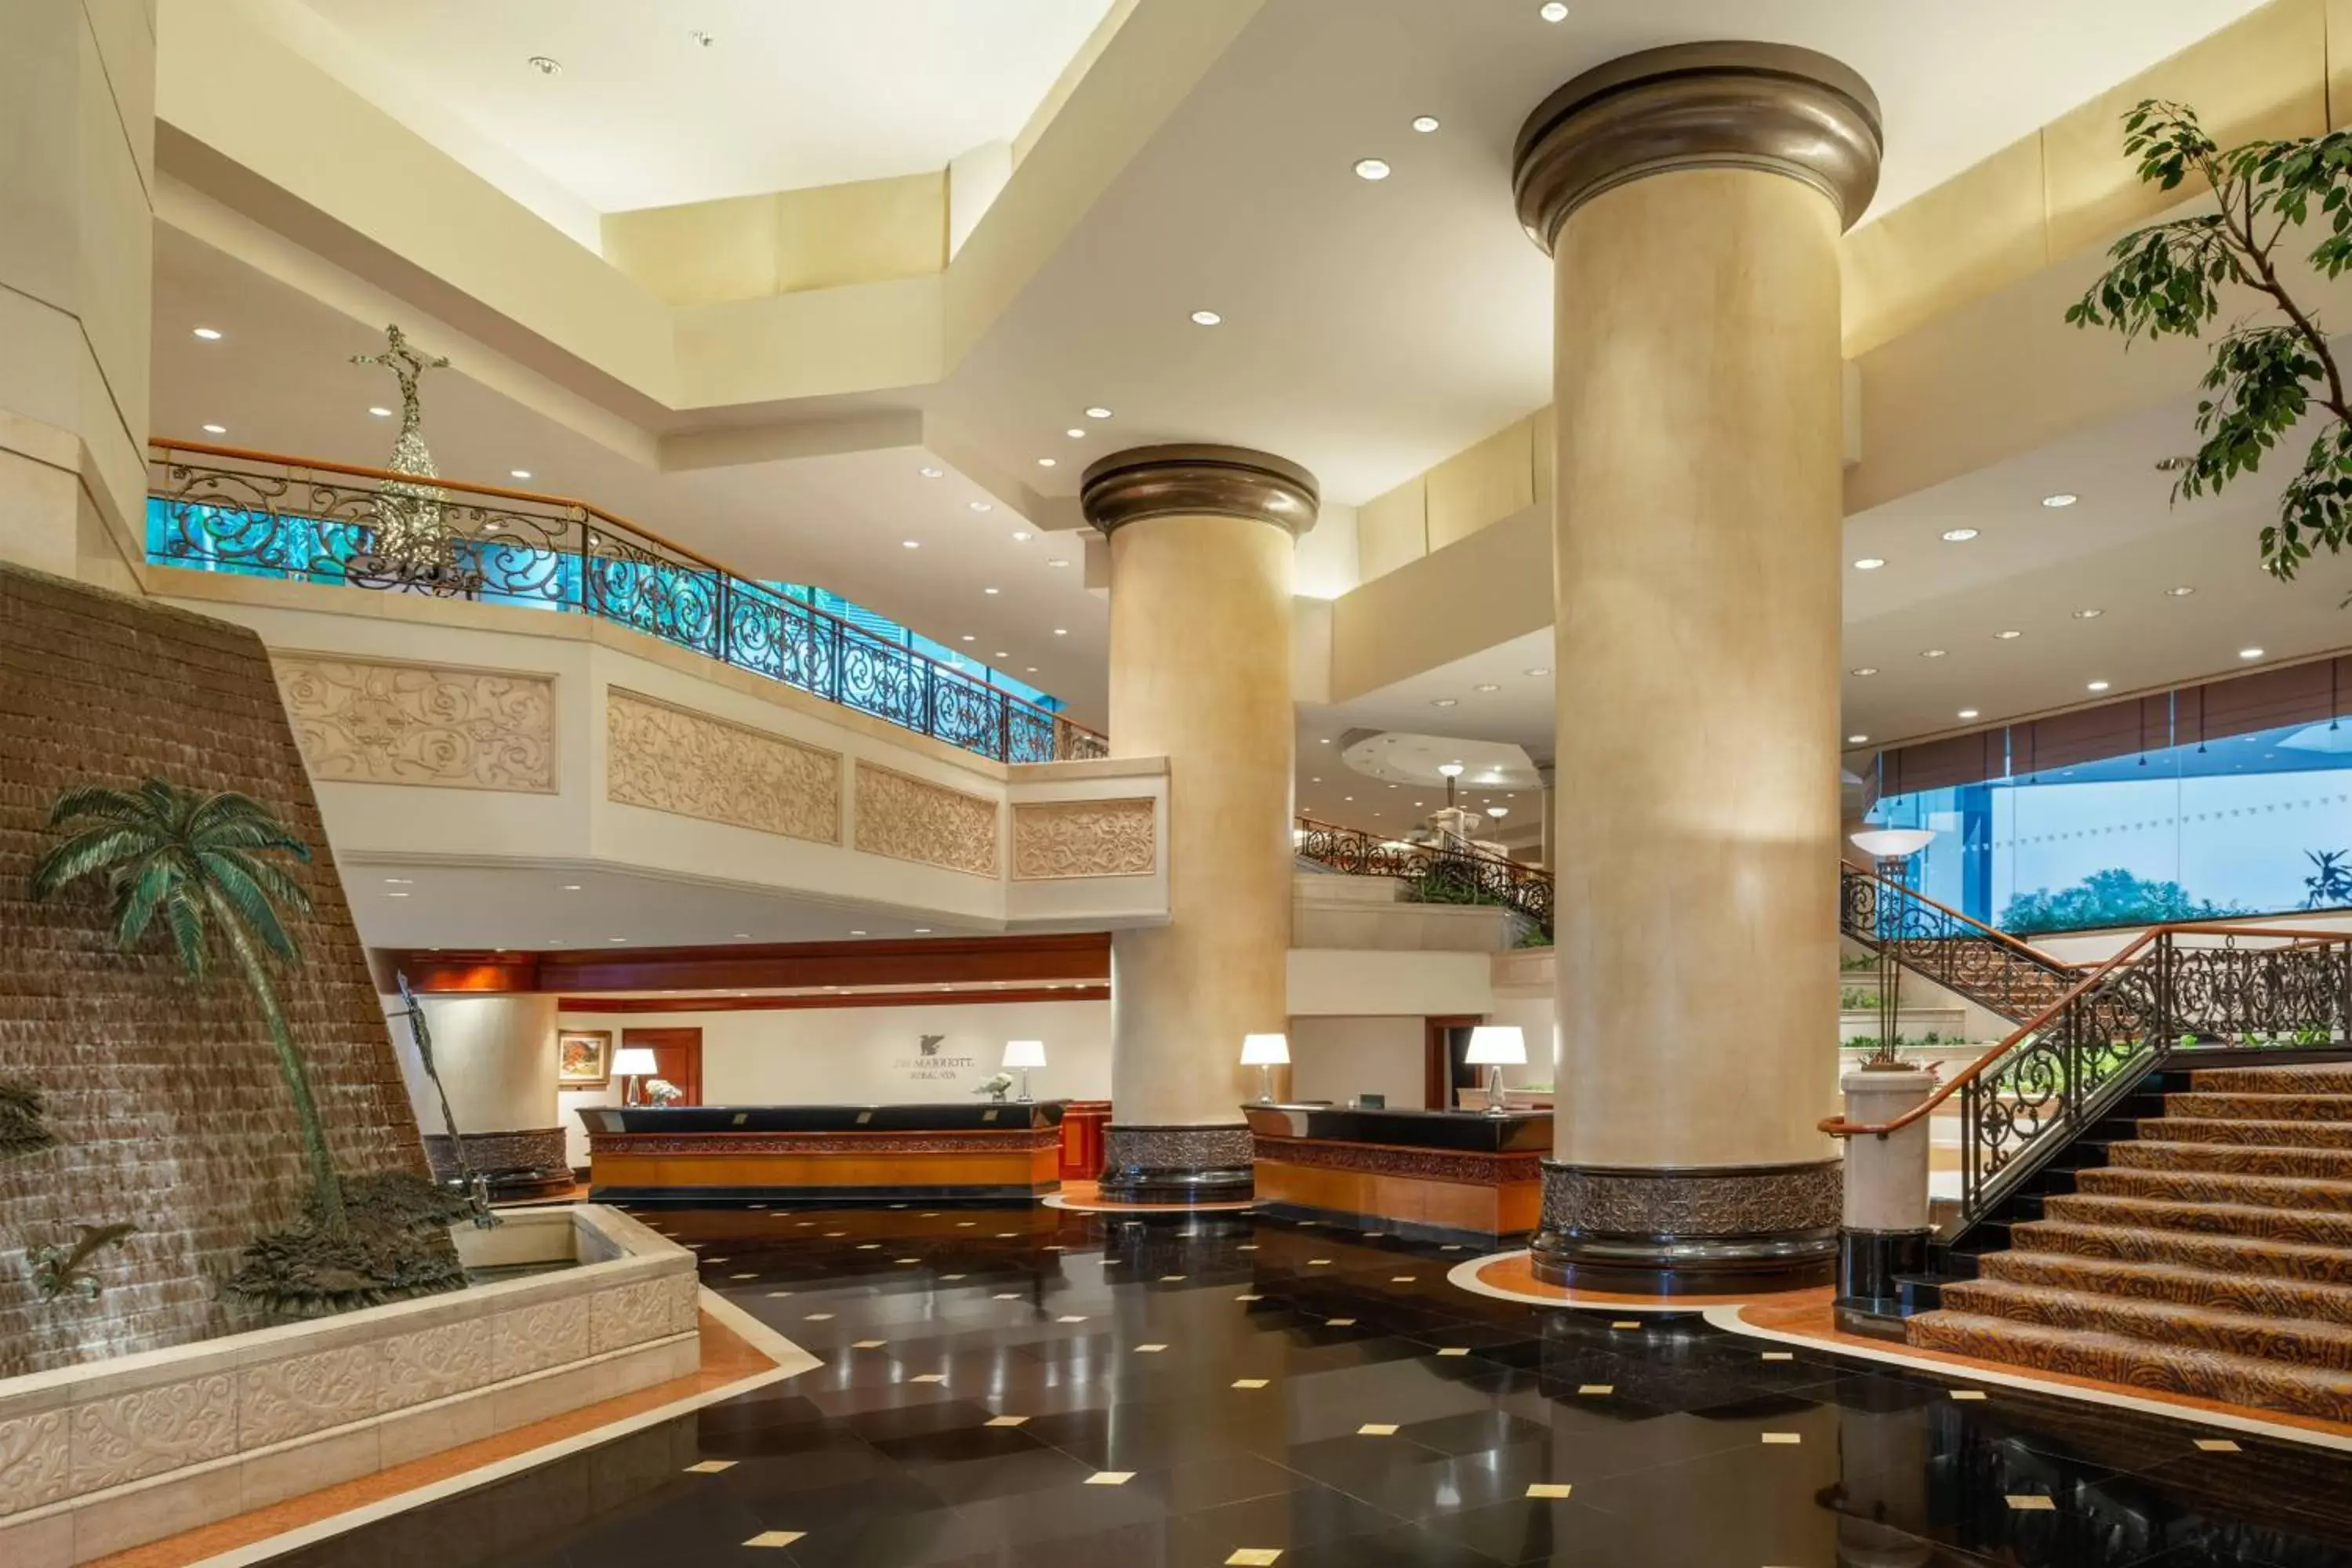 Lobby or reception, Lobby/Reception in JW Marriott Hotel Surabaya